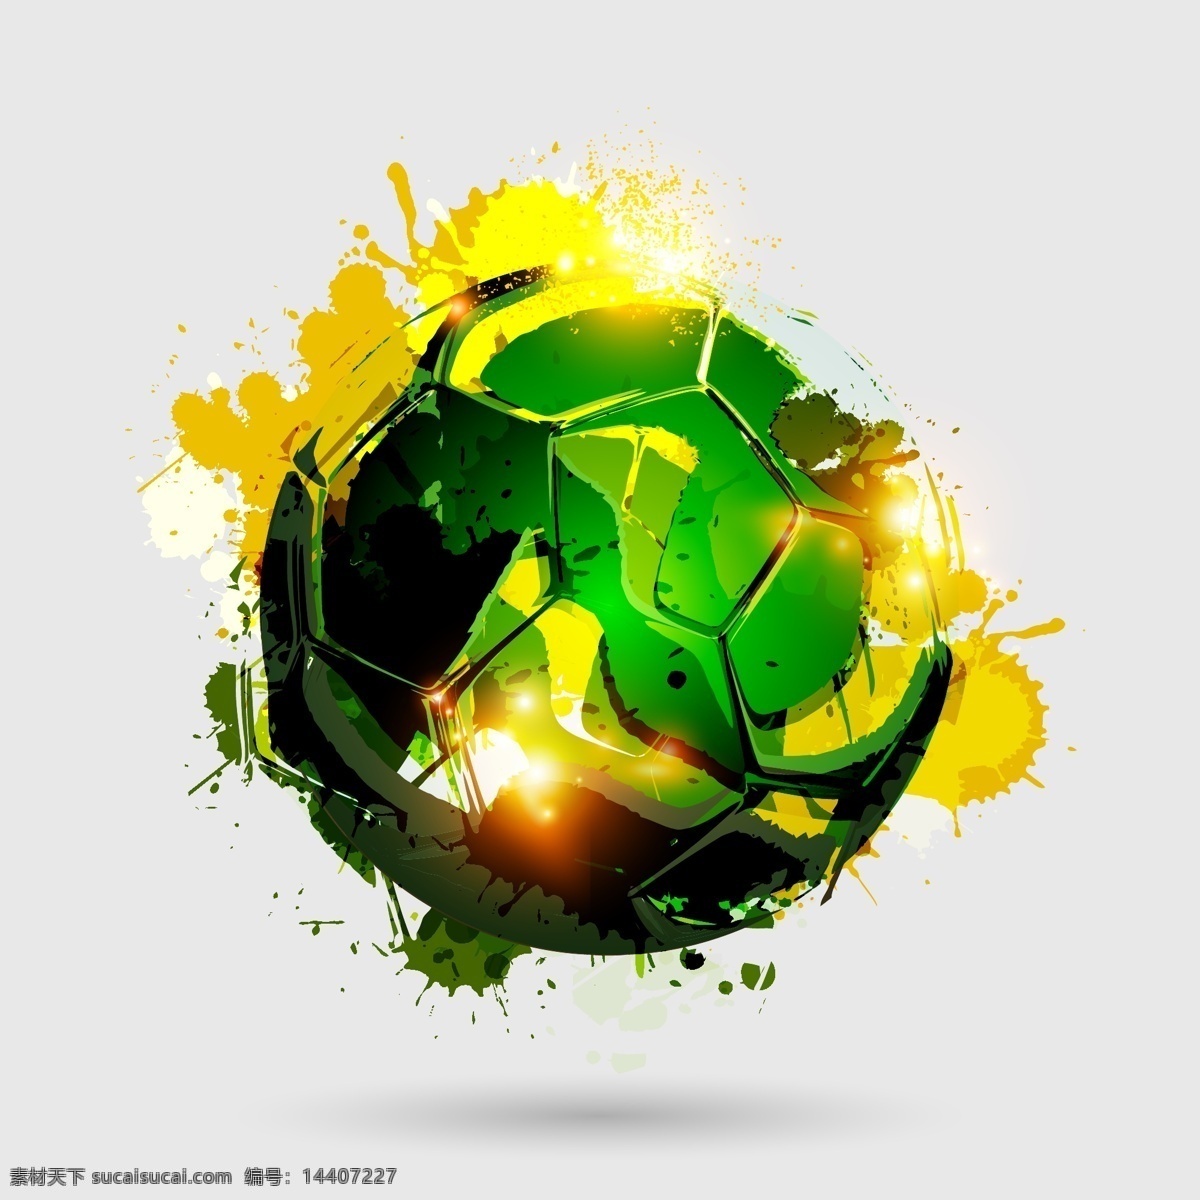 巴西世界杯 世界杯 世界杯元素 矢量足球 卡通足球 手绘足球 足球插画 墨迹 水墨 足球元素 足球素材 体育元素 体育素材 足球比赛 体育用品 生活百科